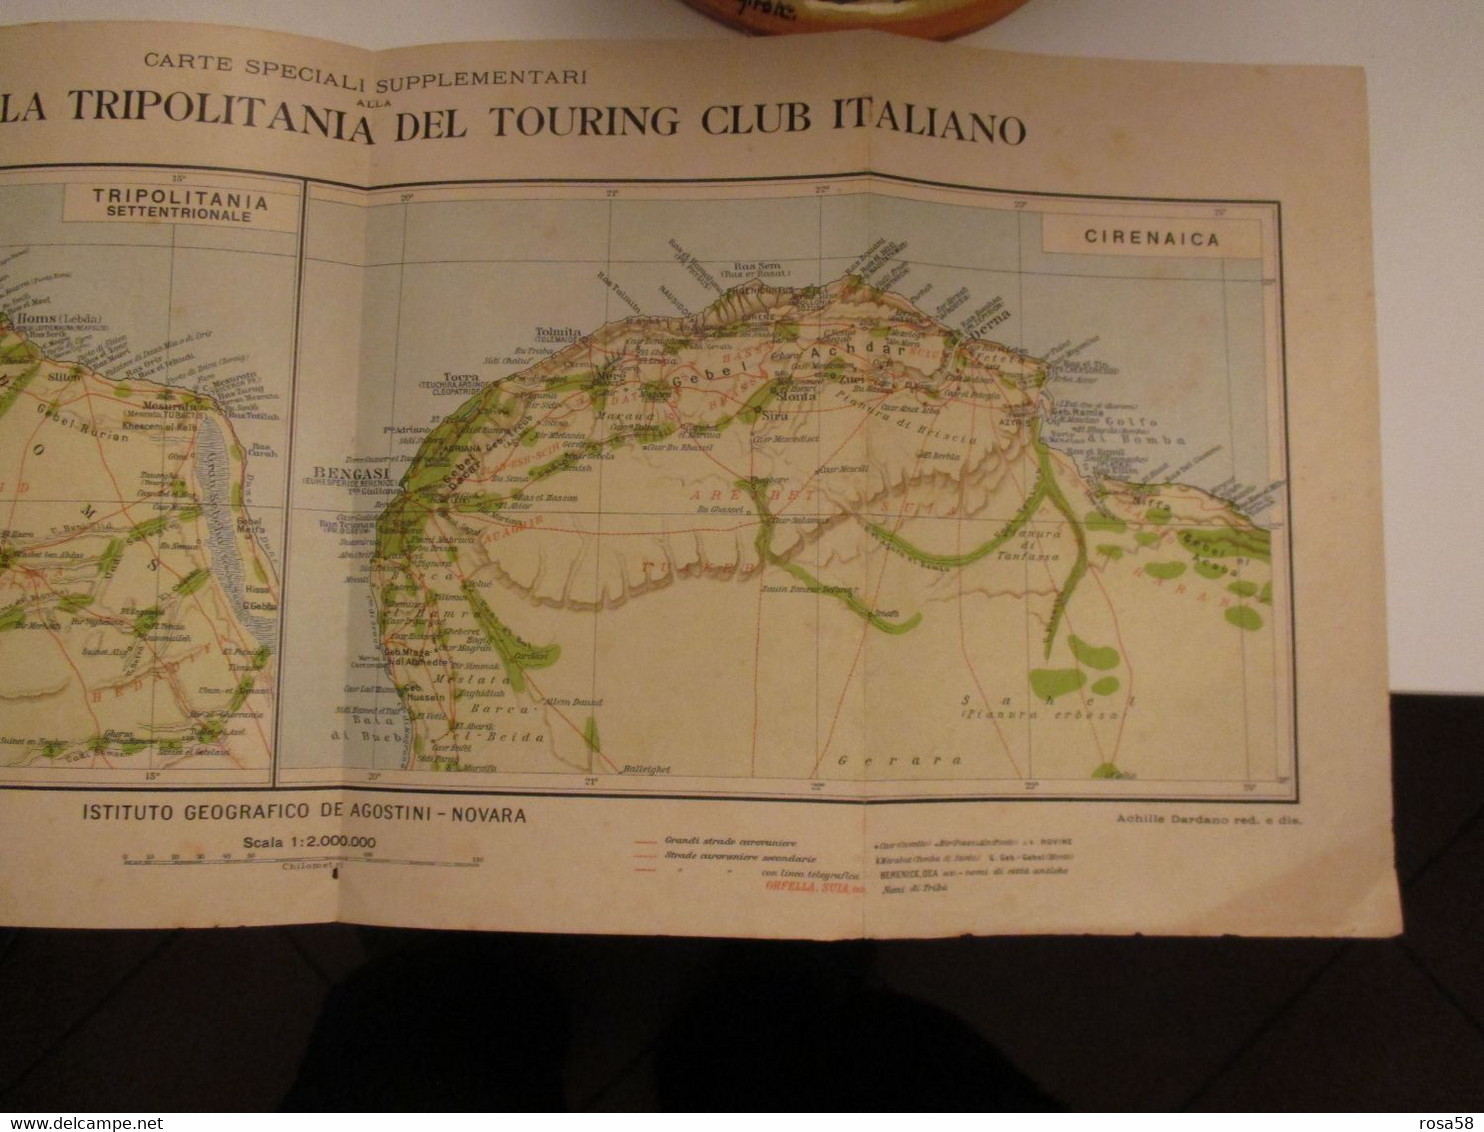 AFRICA Libia Carta Geografica Edizione DE AGOSTINI Novara  Cirenaica Tripolitania Touring Club Italiano Coloinie Italian - Mondo